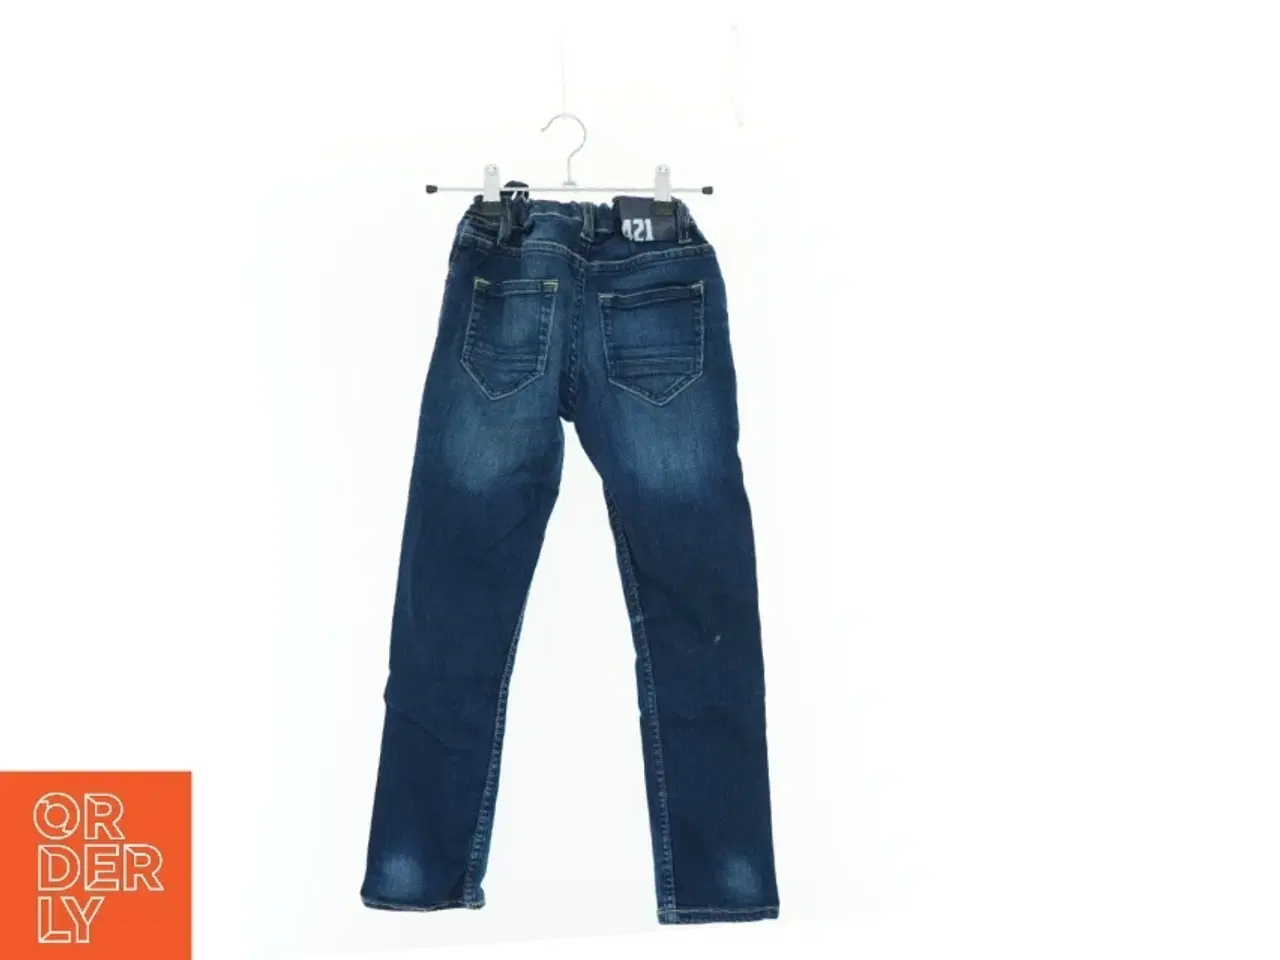 Billede 2 - Jeans fra Grant (str. 134 cm)